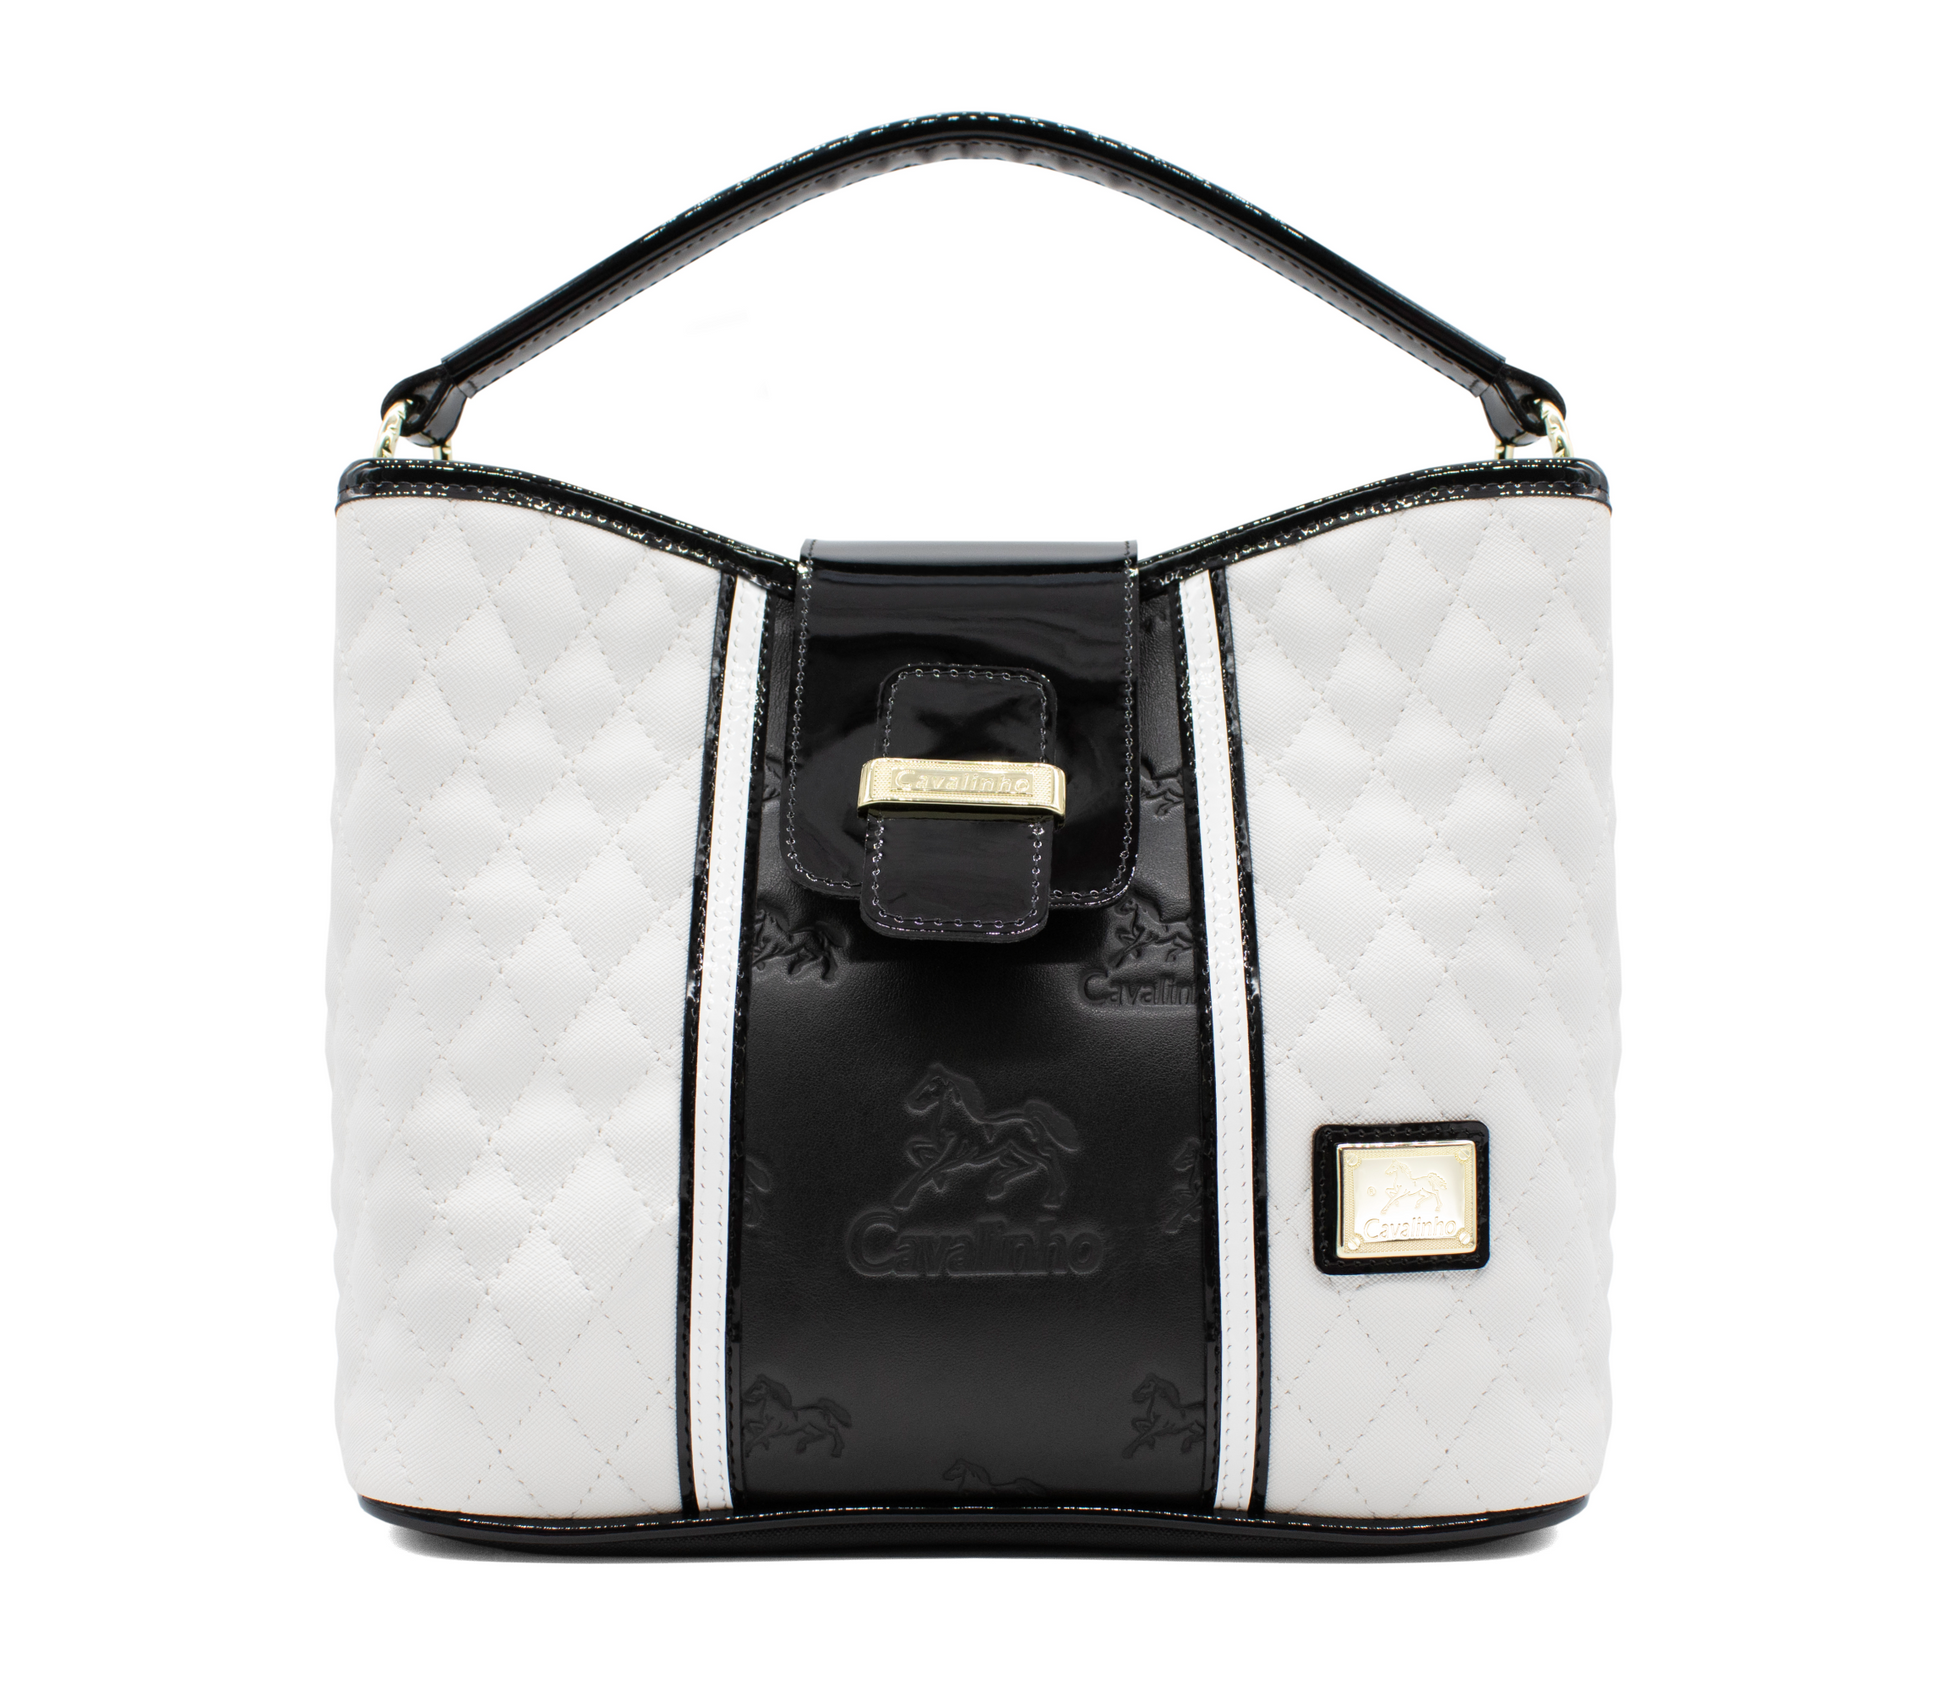 Cavalinho Noble Handbag - Black and White - 18180157.33_1